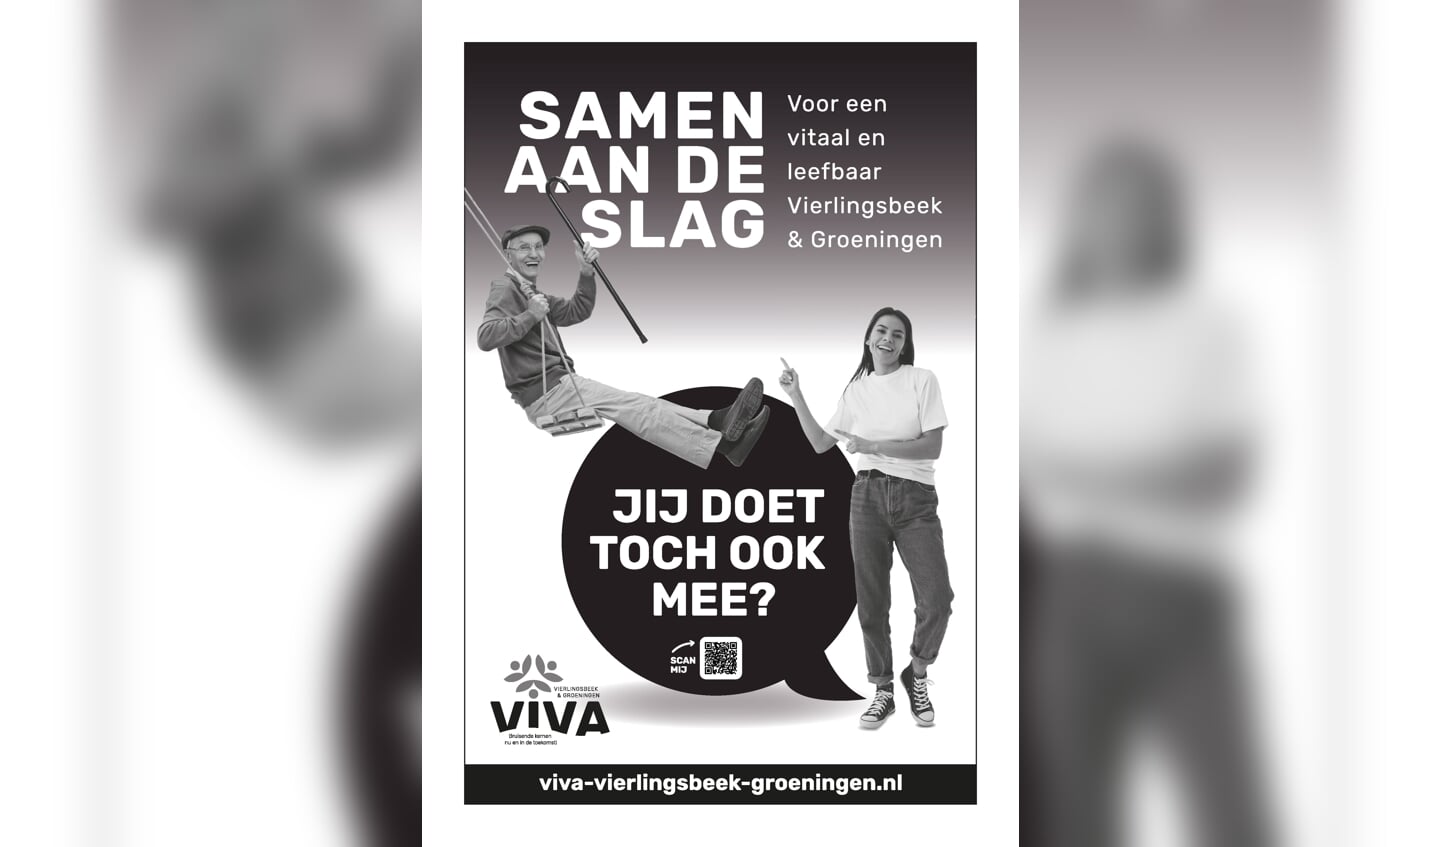 Viva zet zich in voor een vitaal en leefbaar Vierlingsbeek en Groeningen.